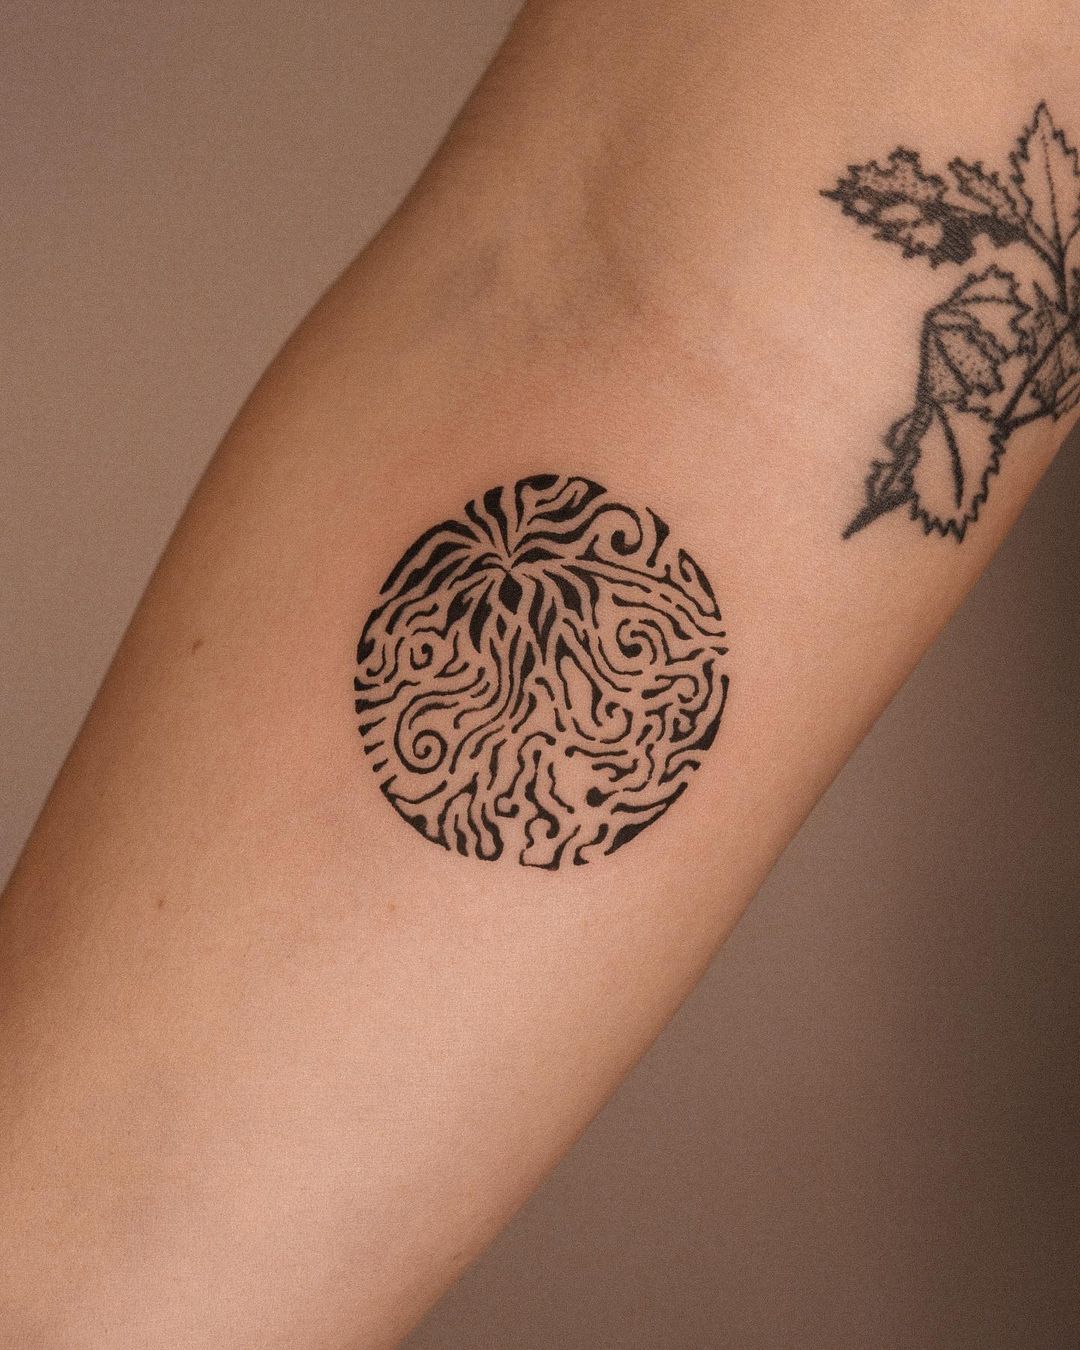 Small tattoo on forearm by tq.tat